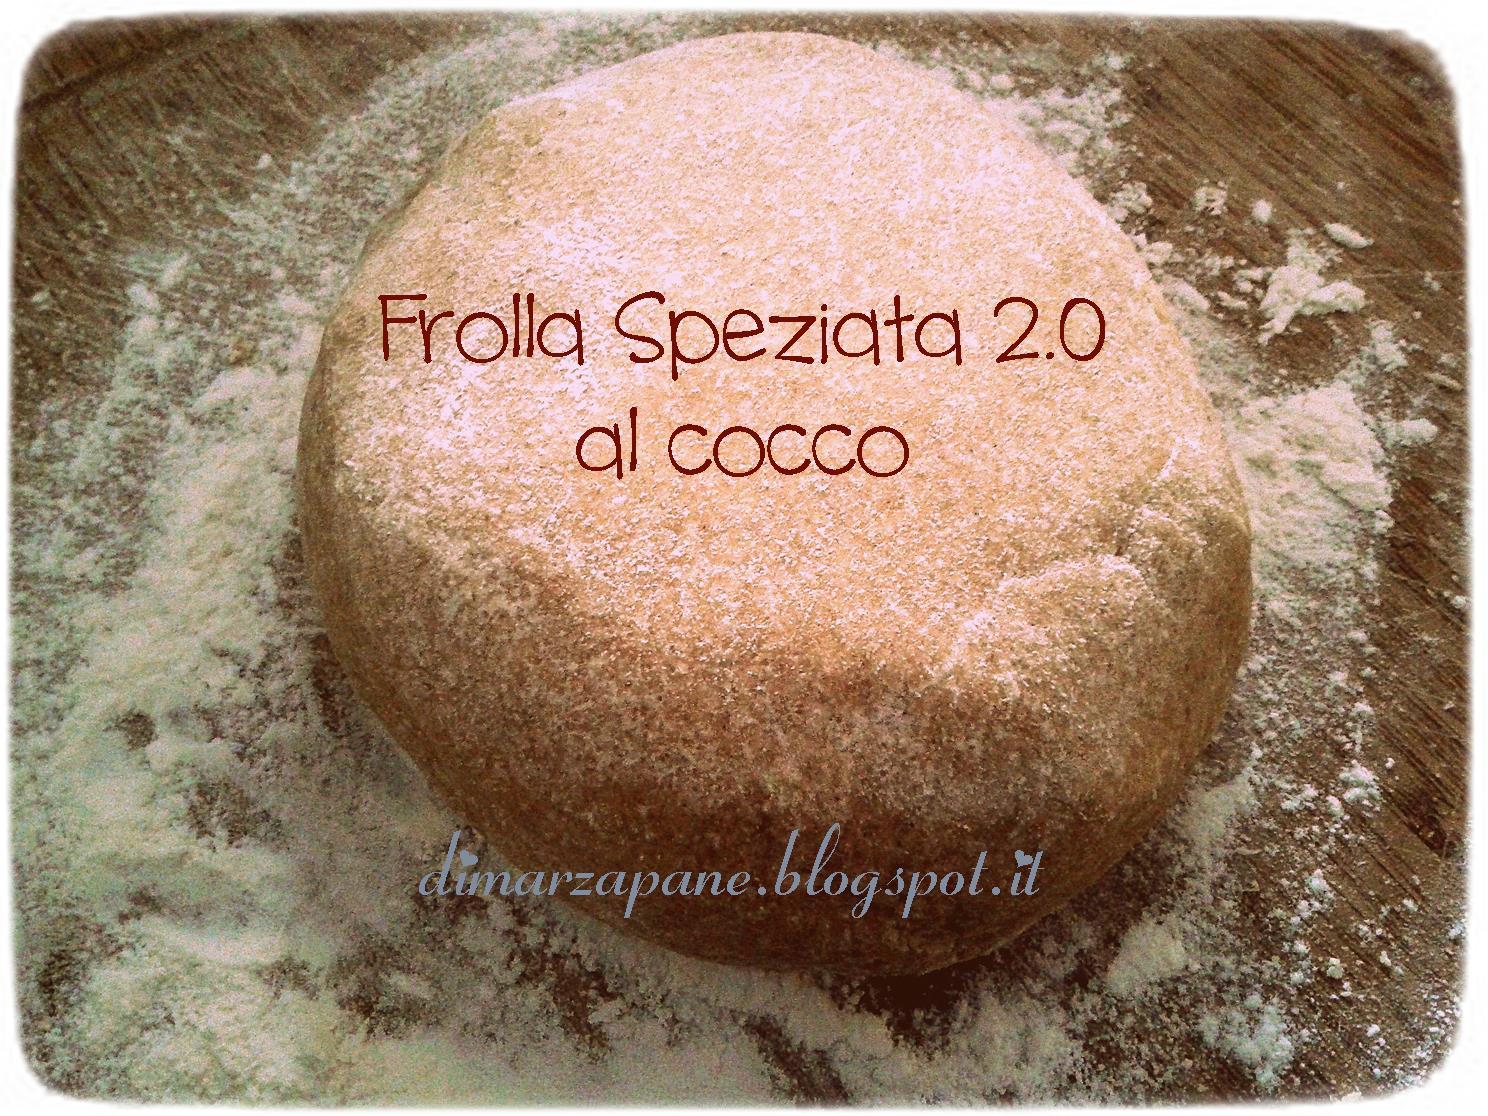 Frolla Speziata 2.0 Coconut Version